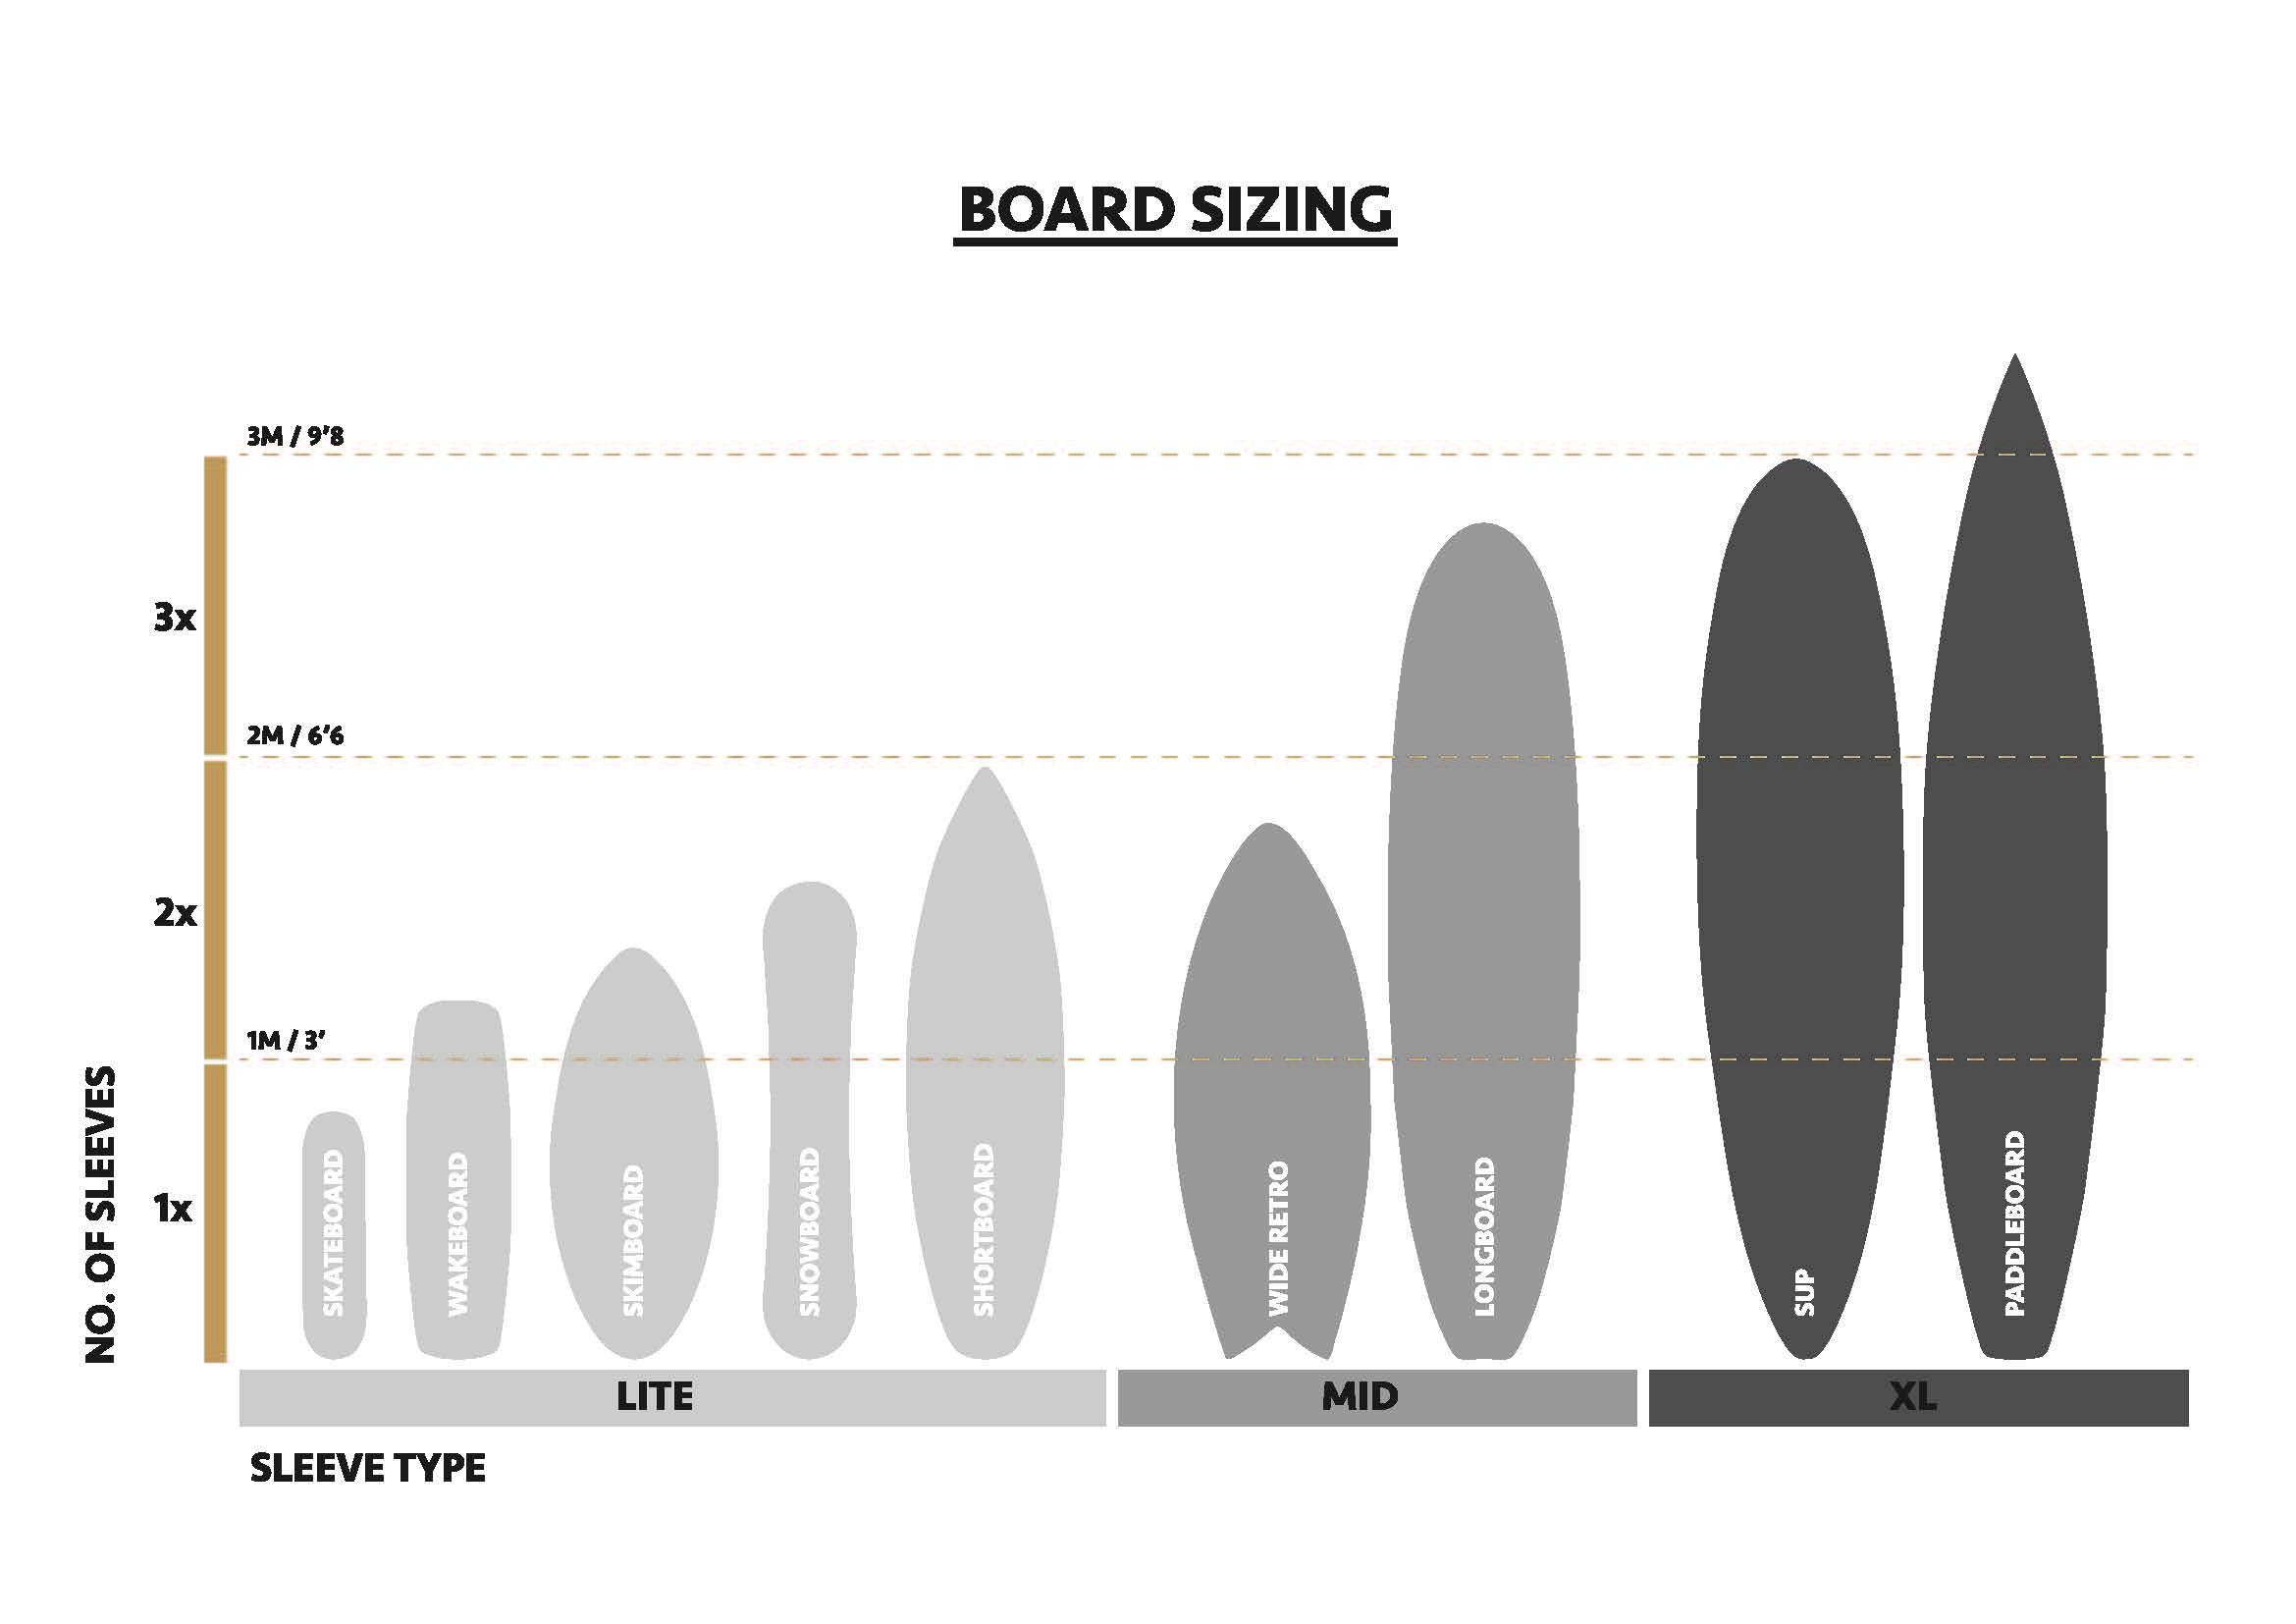 Longboard Surfboard Size Chart